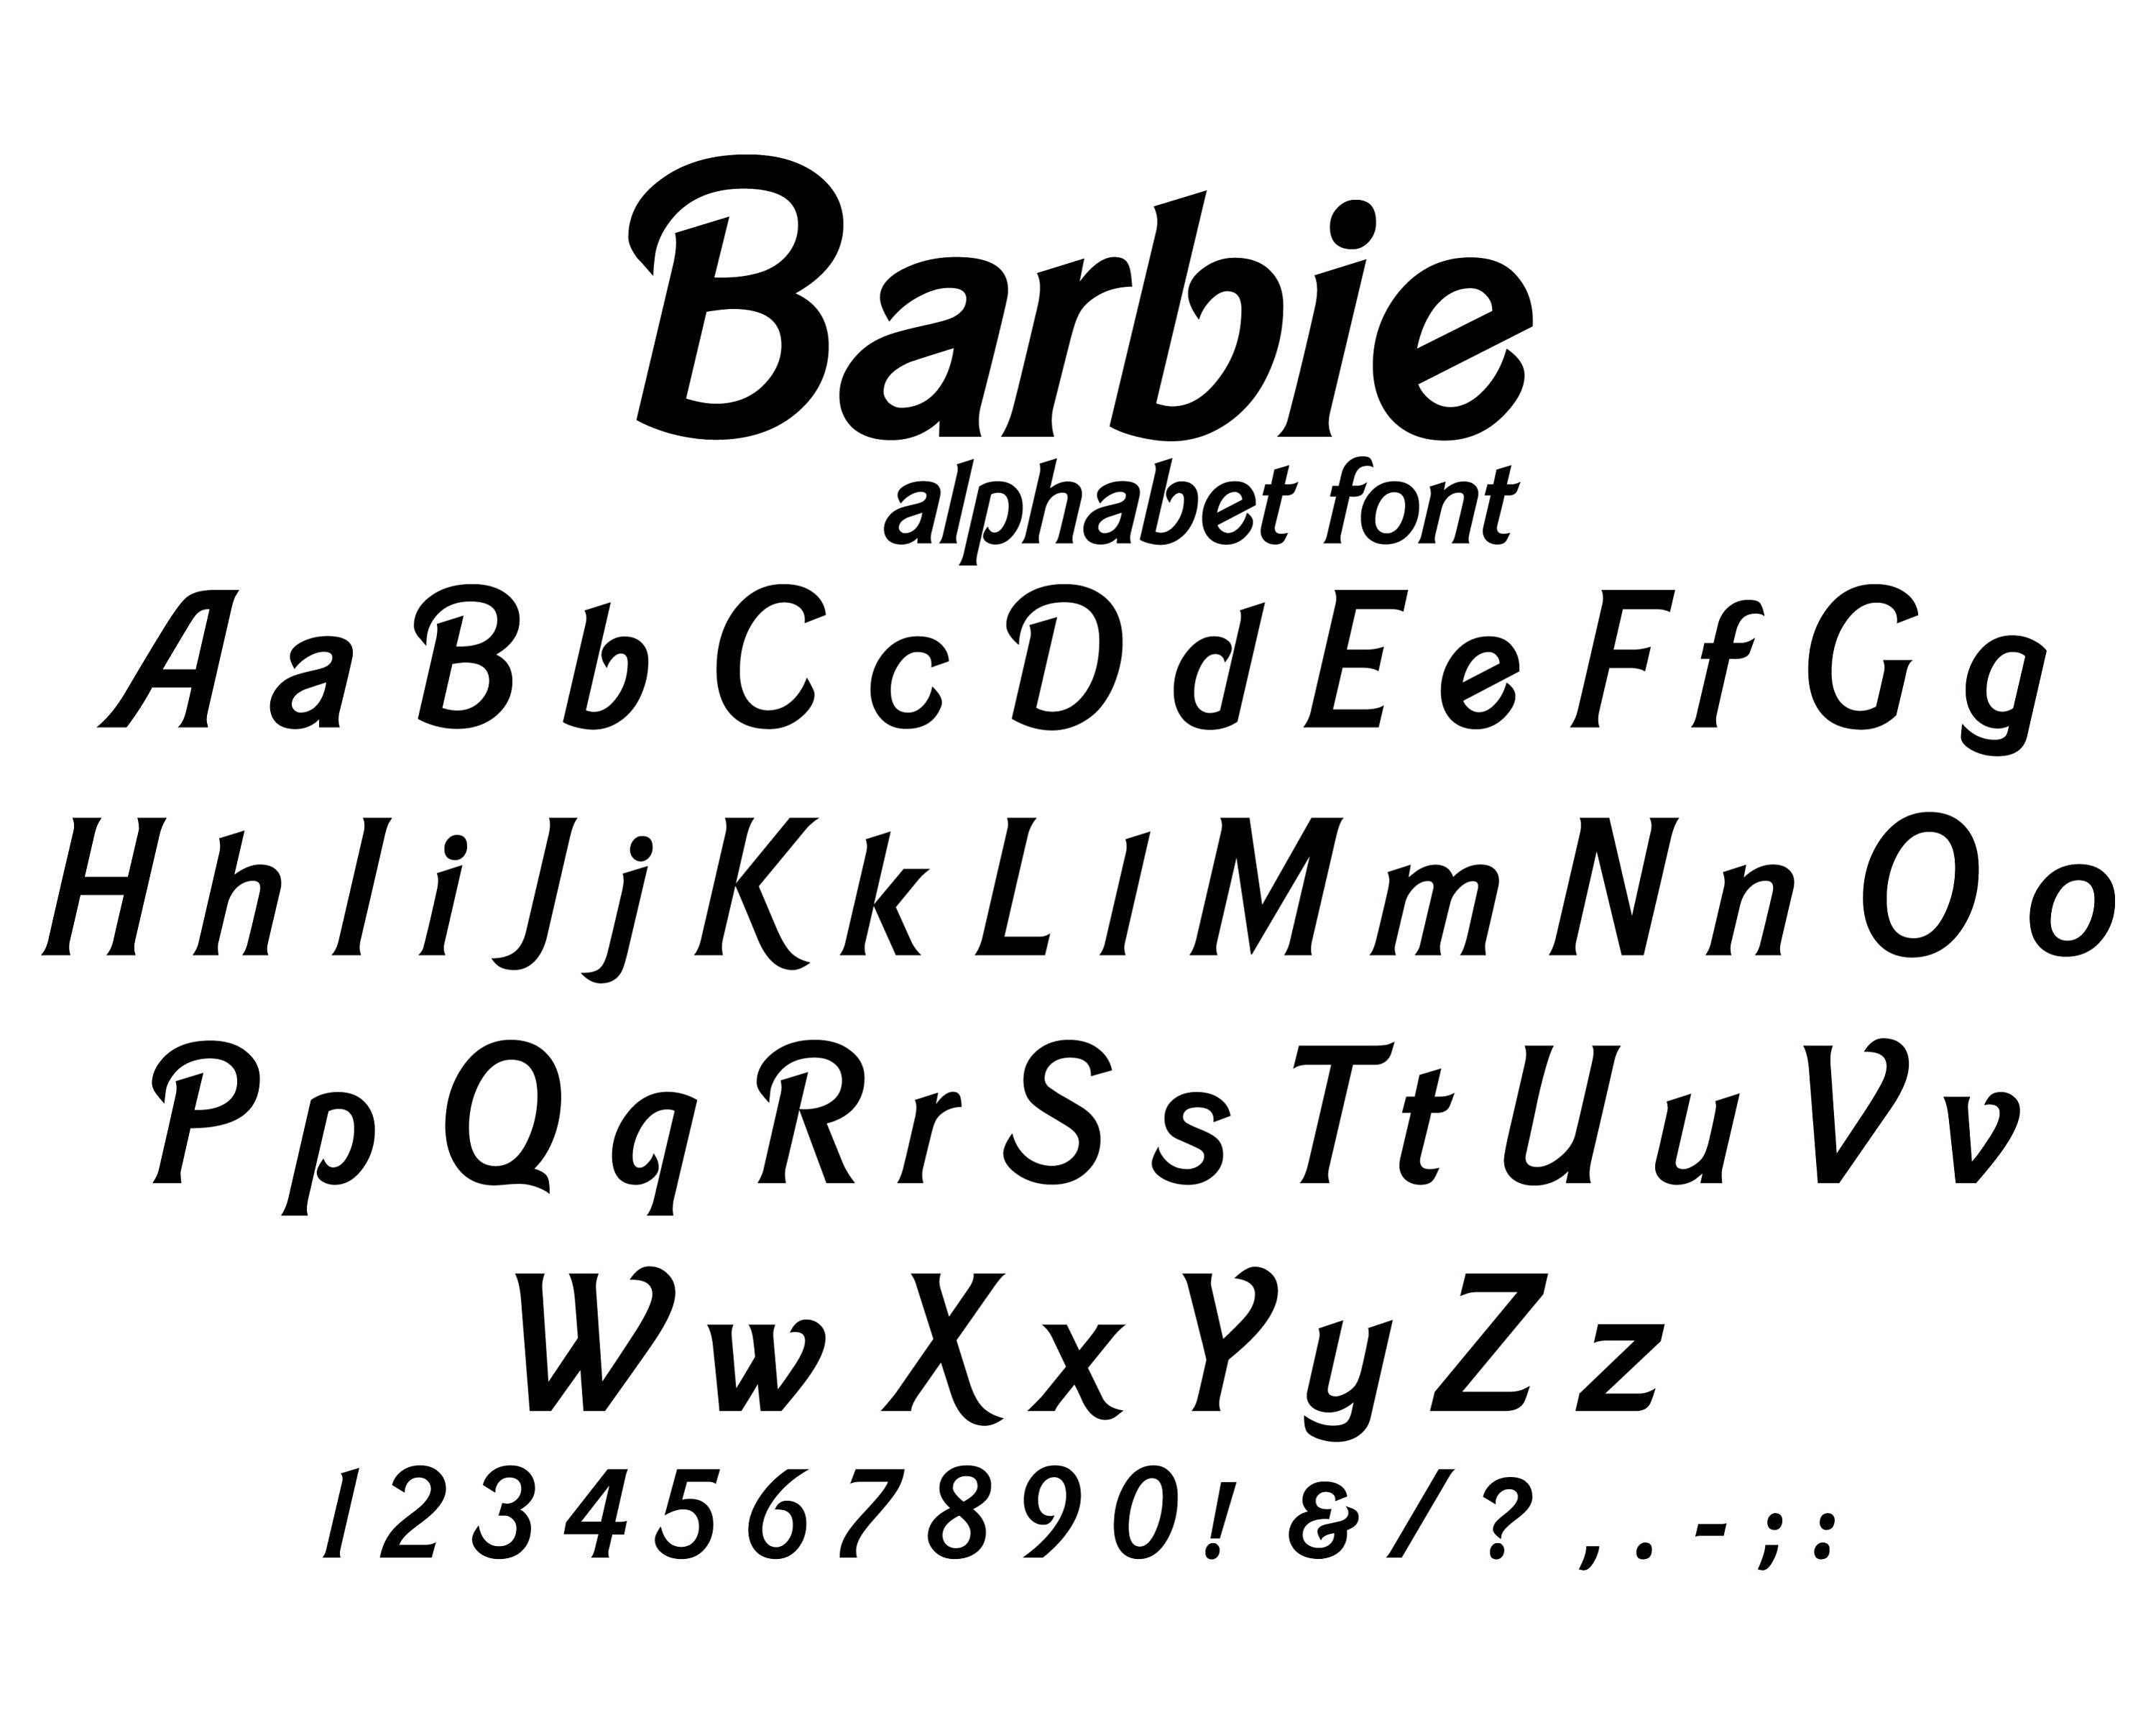 Barbie Writing Font